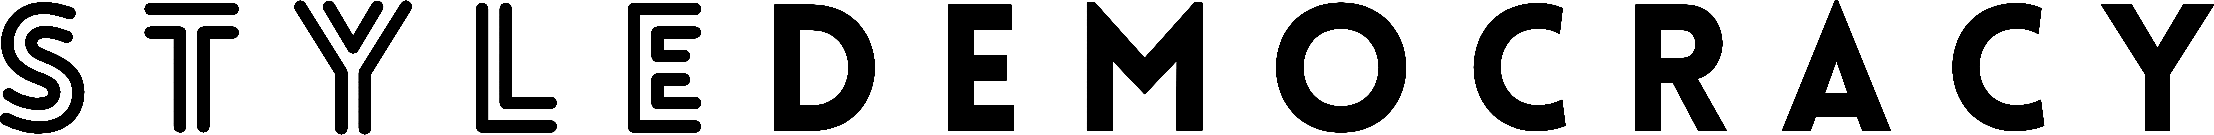 StyleDemocracy-Logo-Black-1